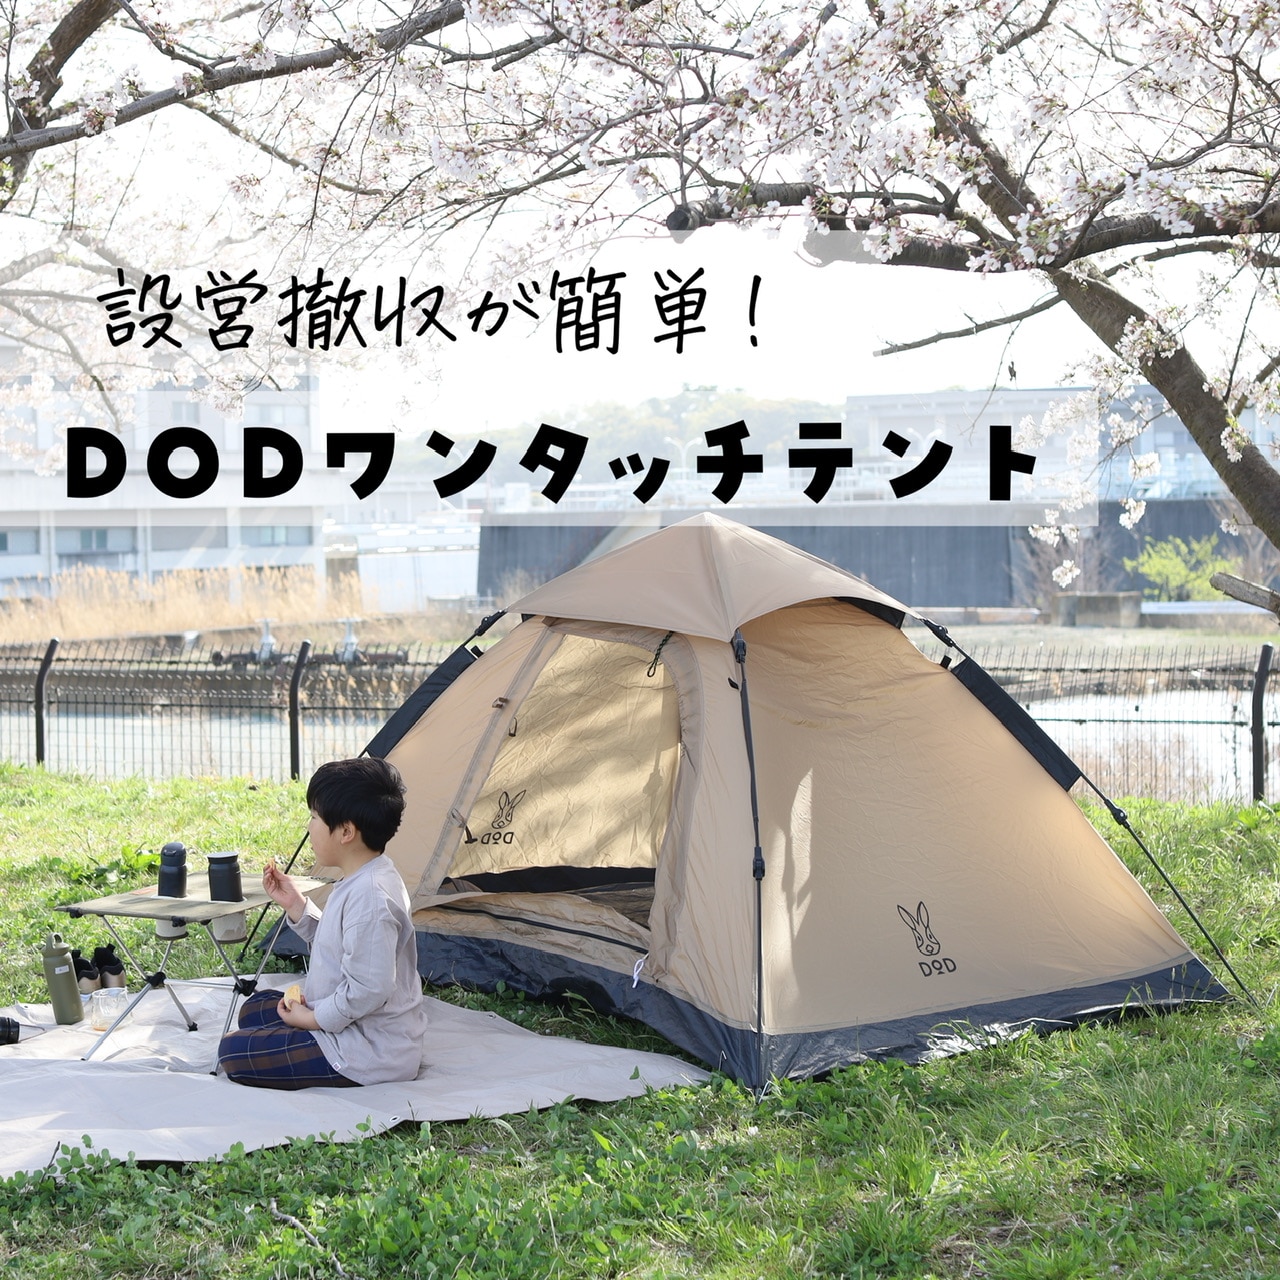 ワンタッチテント タン T2-629-TN DOD【DOD認定正規取引店】キャンプ